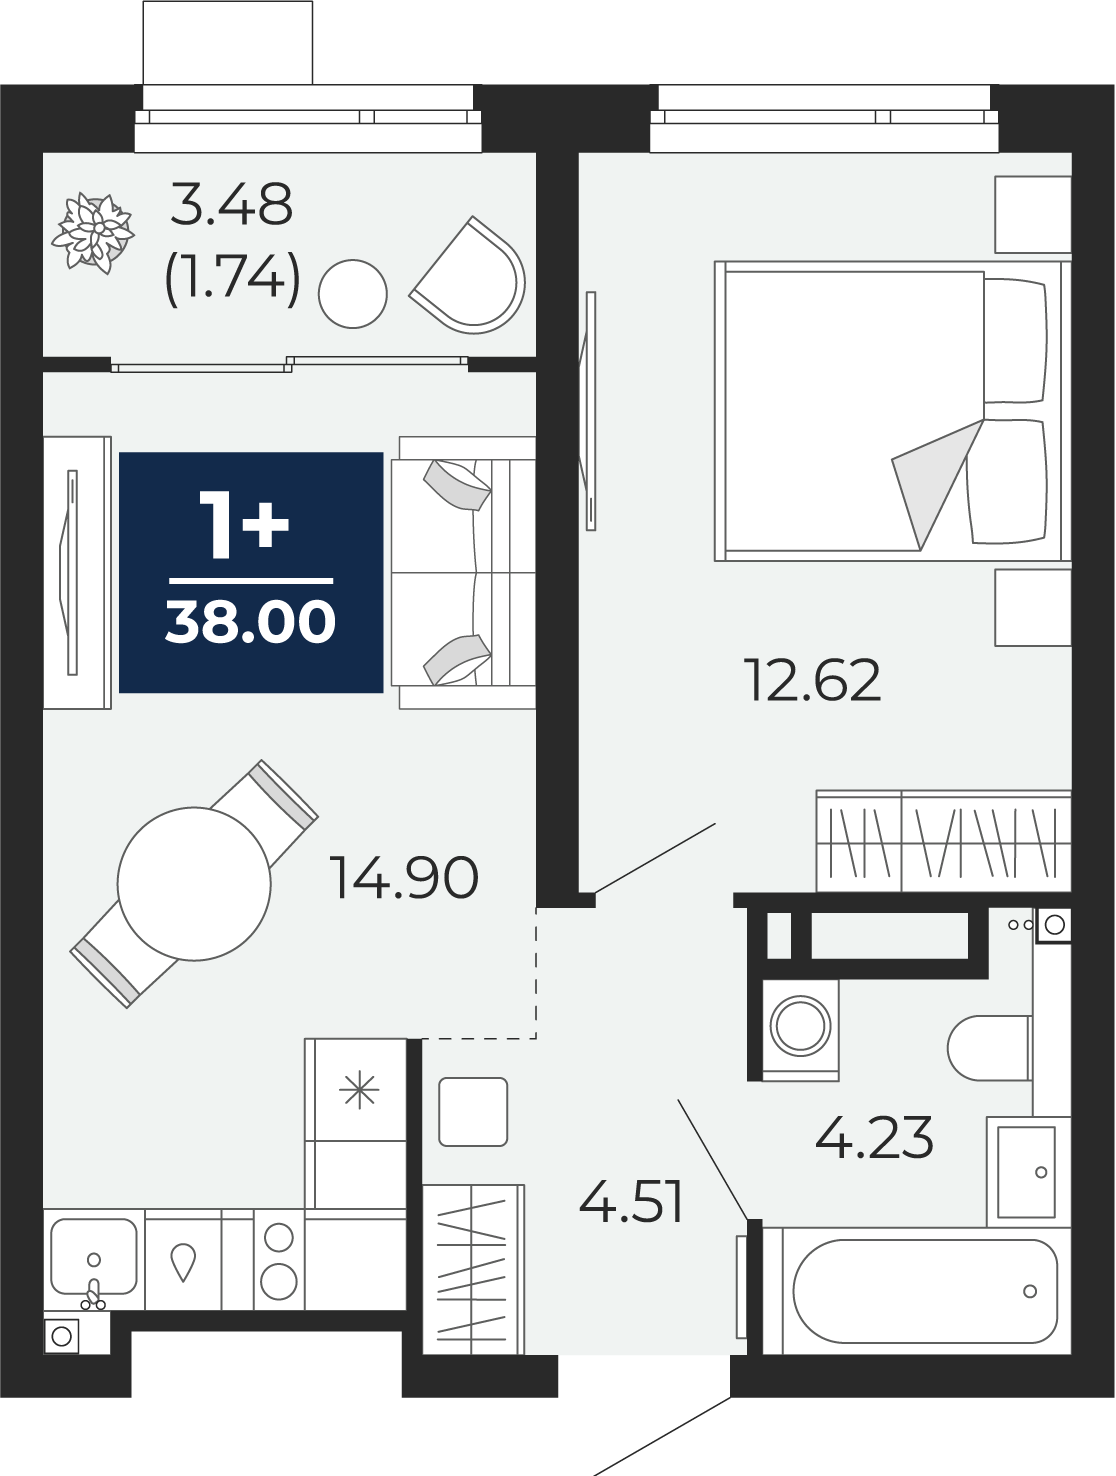 Квартира № 231, 1-комнатная, 38 кв. м, 13 этаж